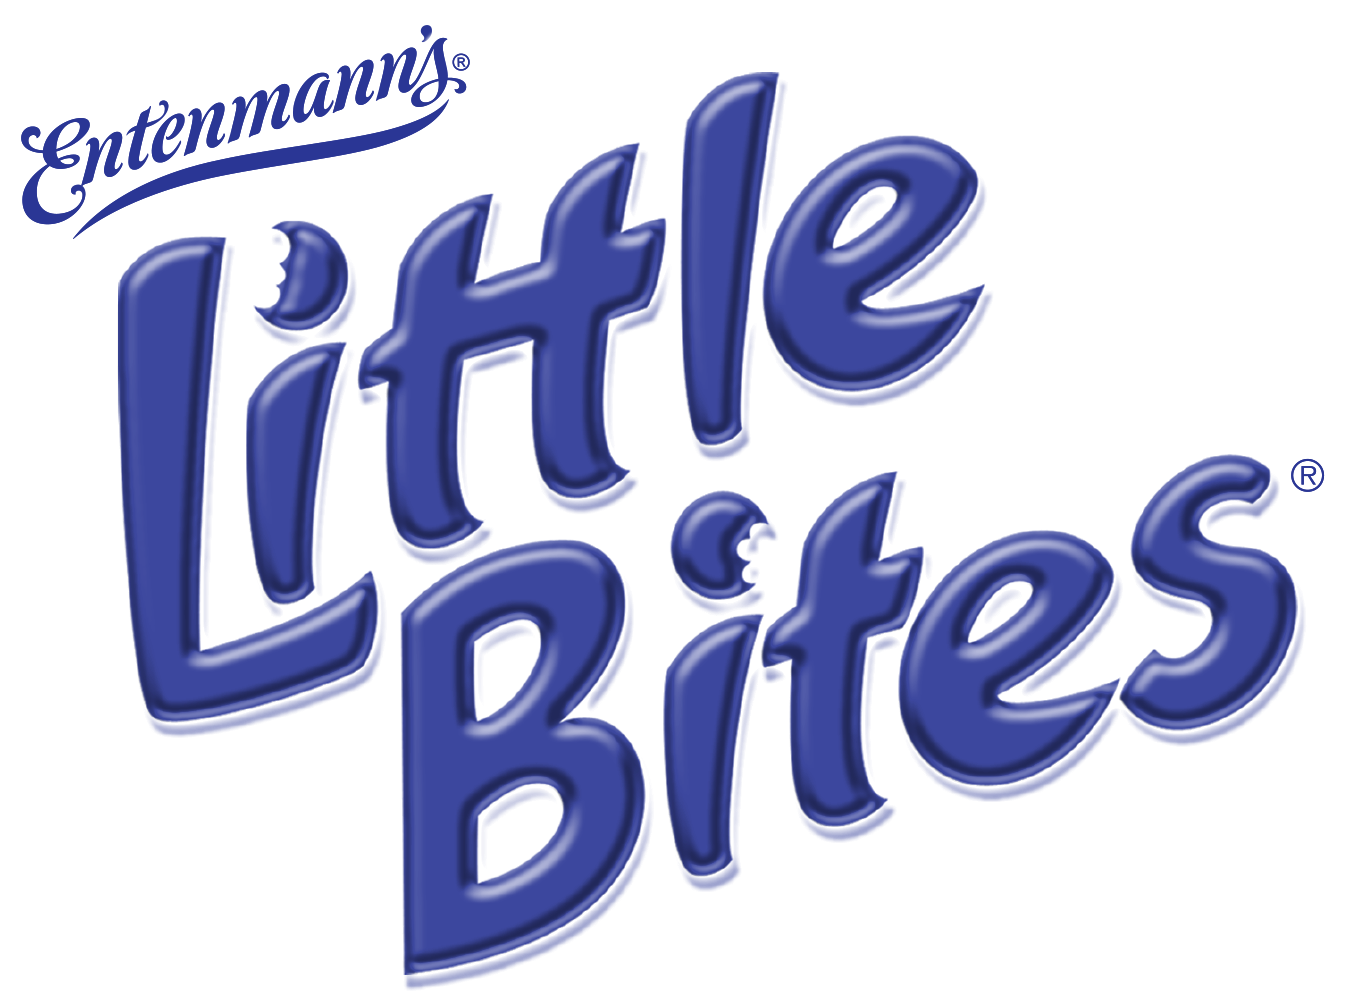 Little Bites Logo